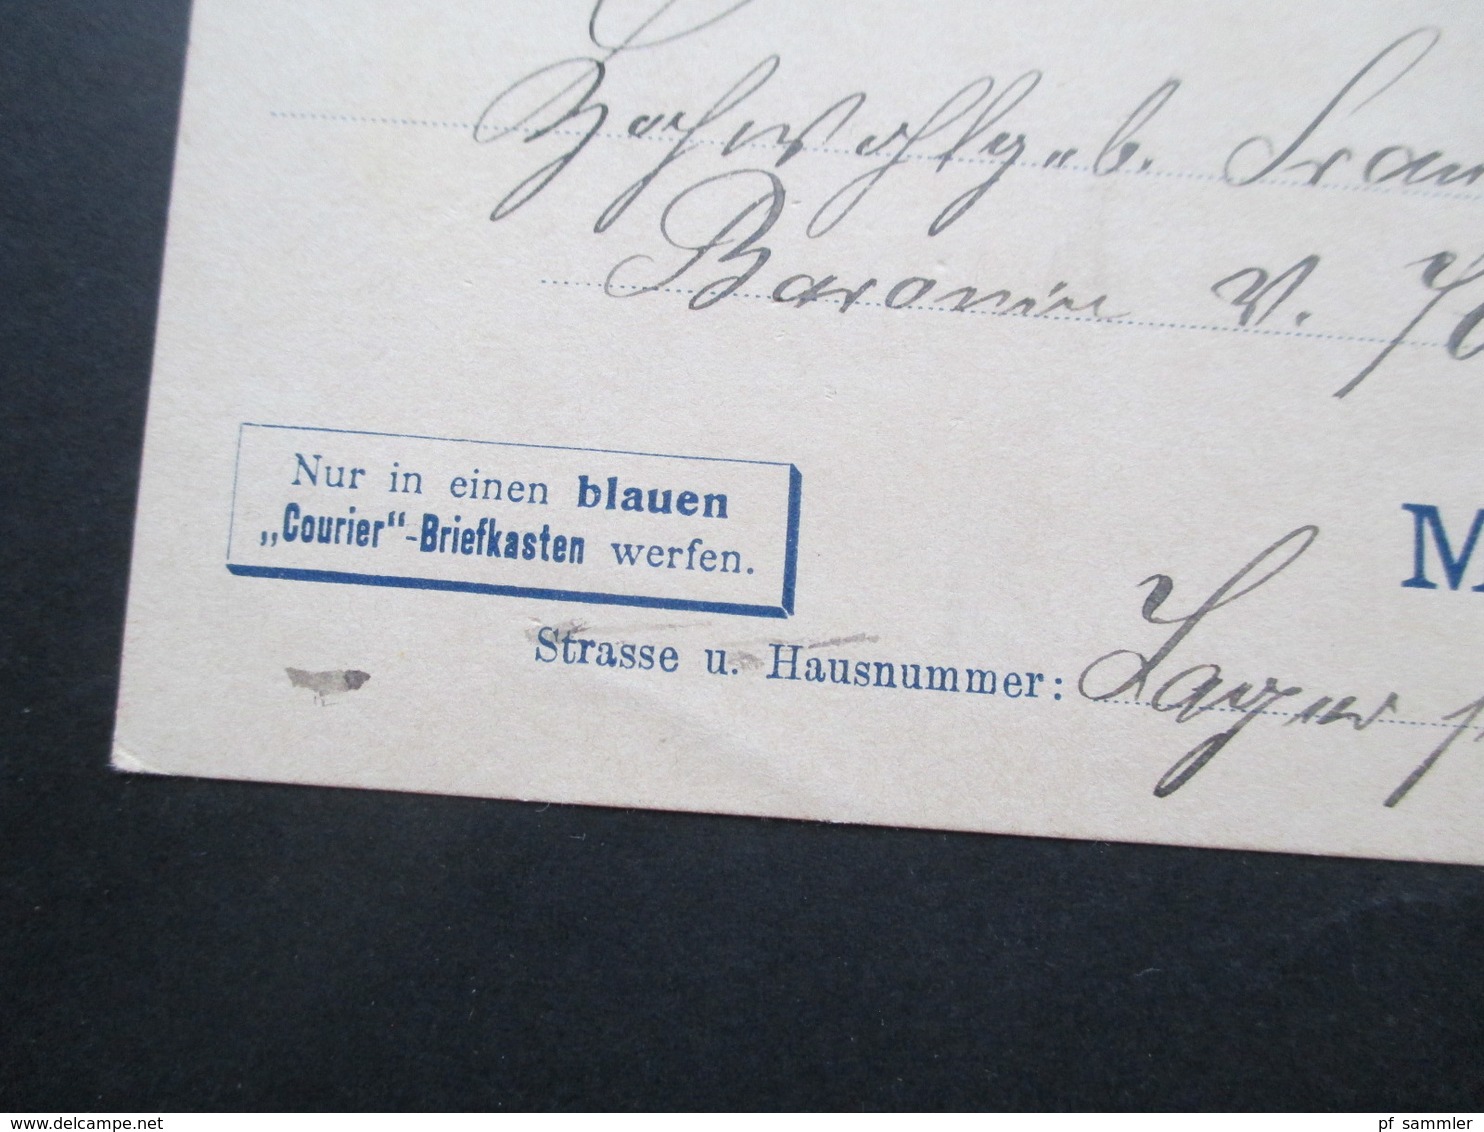 Deutsches Reich Privatpost Courier Karte München 1898 Nur In Einen Blauen Courier Briefkasten Werfen - Posta Privata & Locale